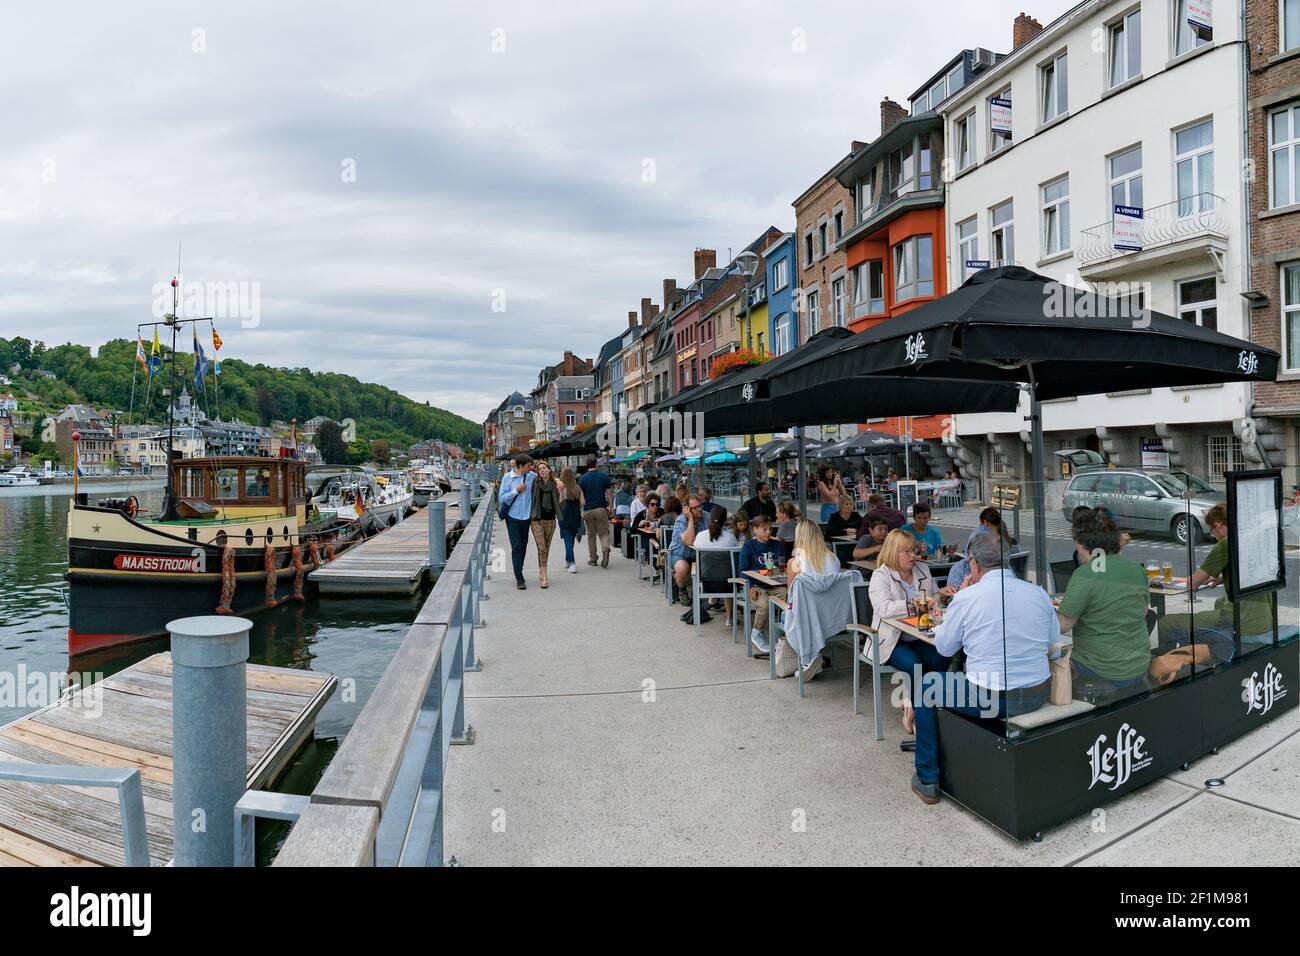 Les touristes apprécient un repas dans les restaurants en bord de rivière De Dinant sur la rivière Maas avec des passants Banque D'Images